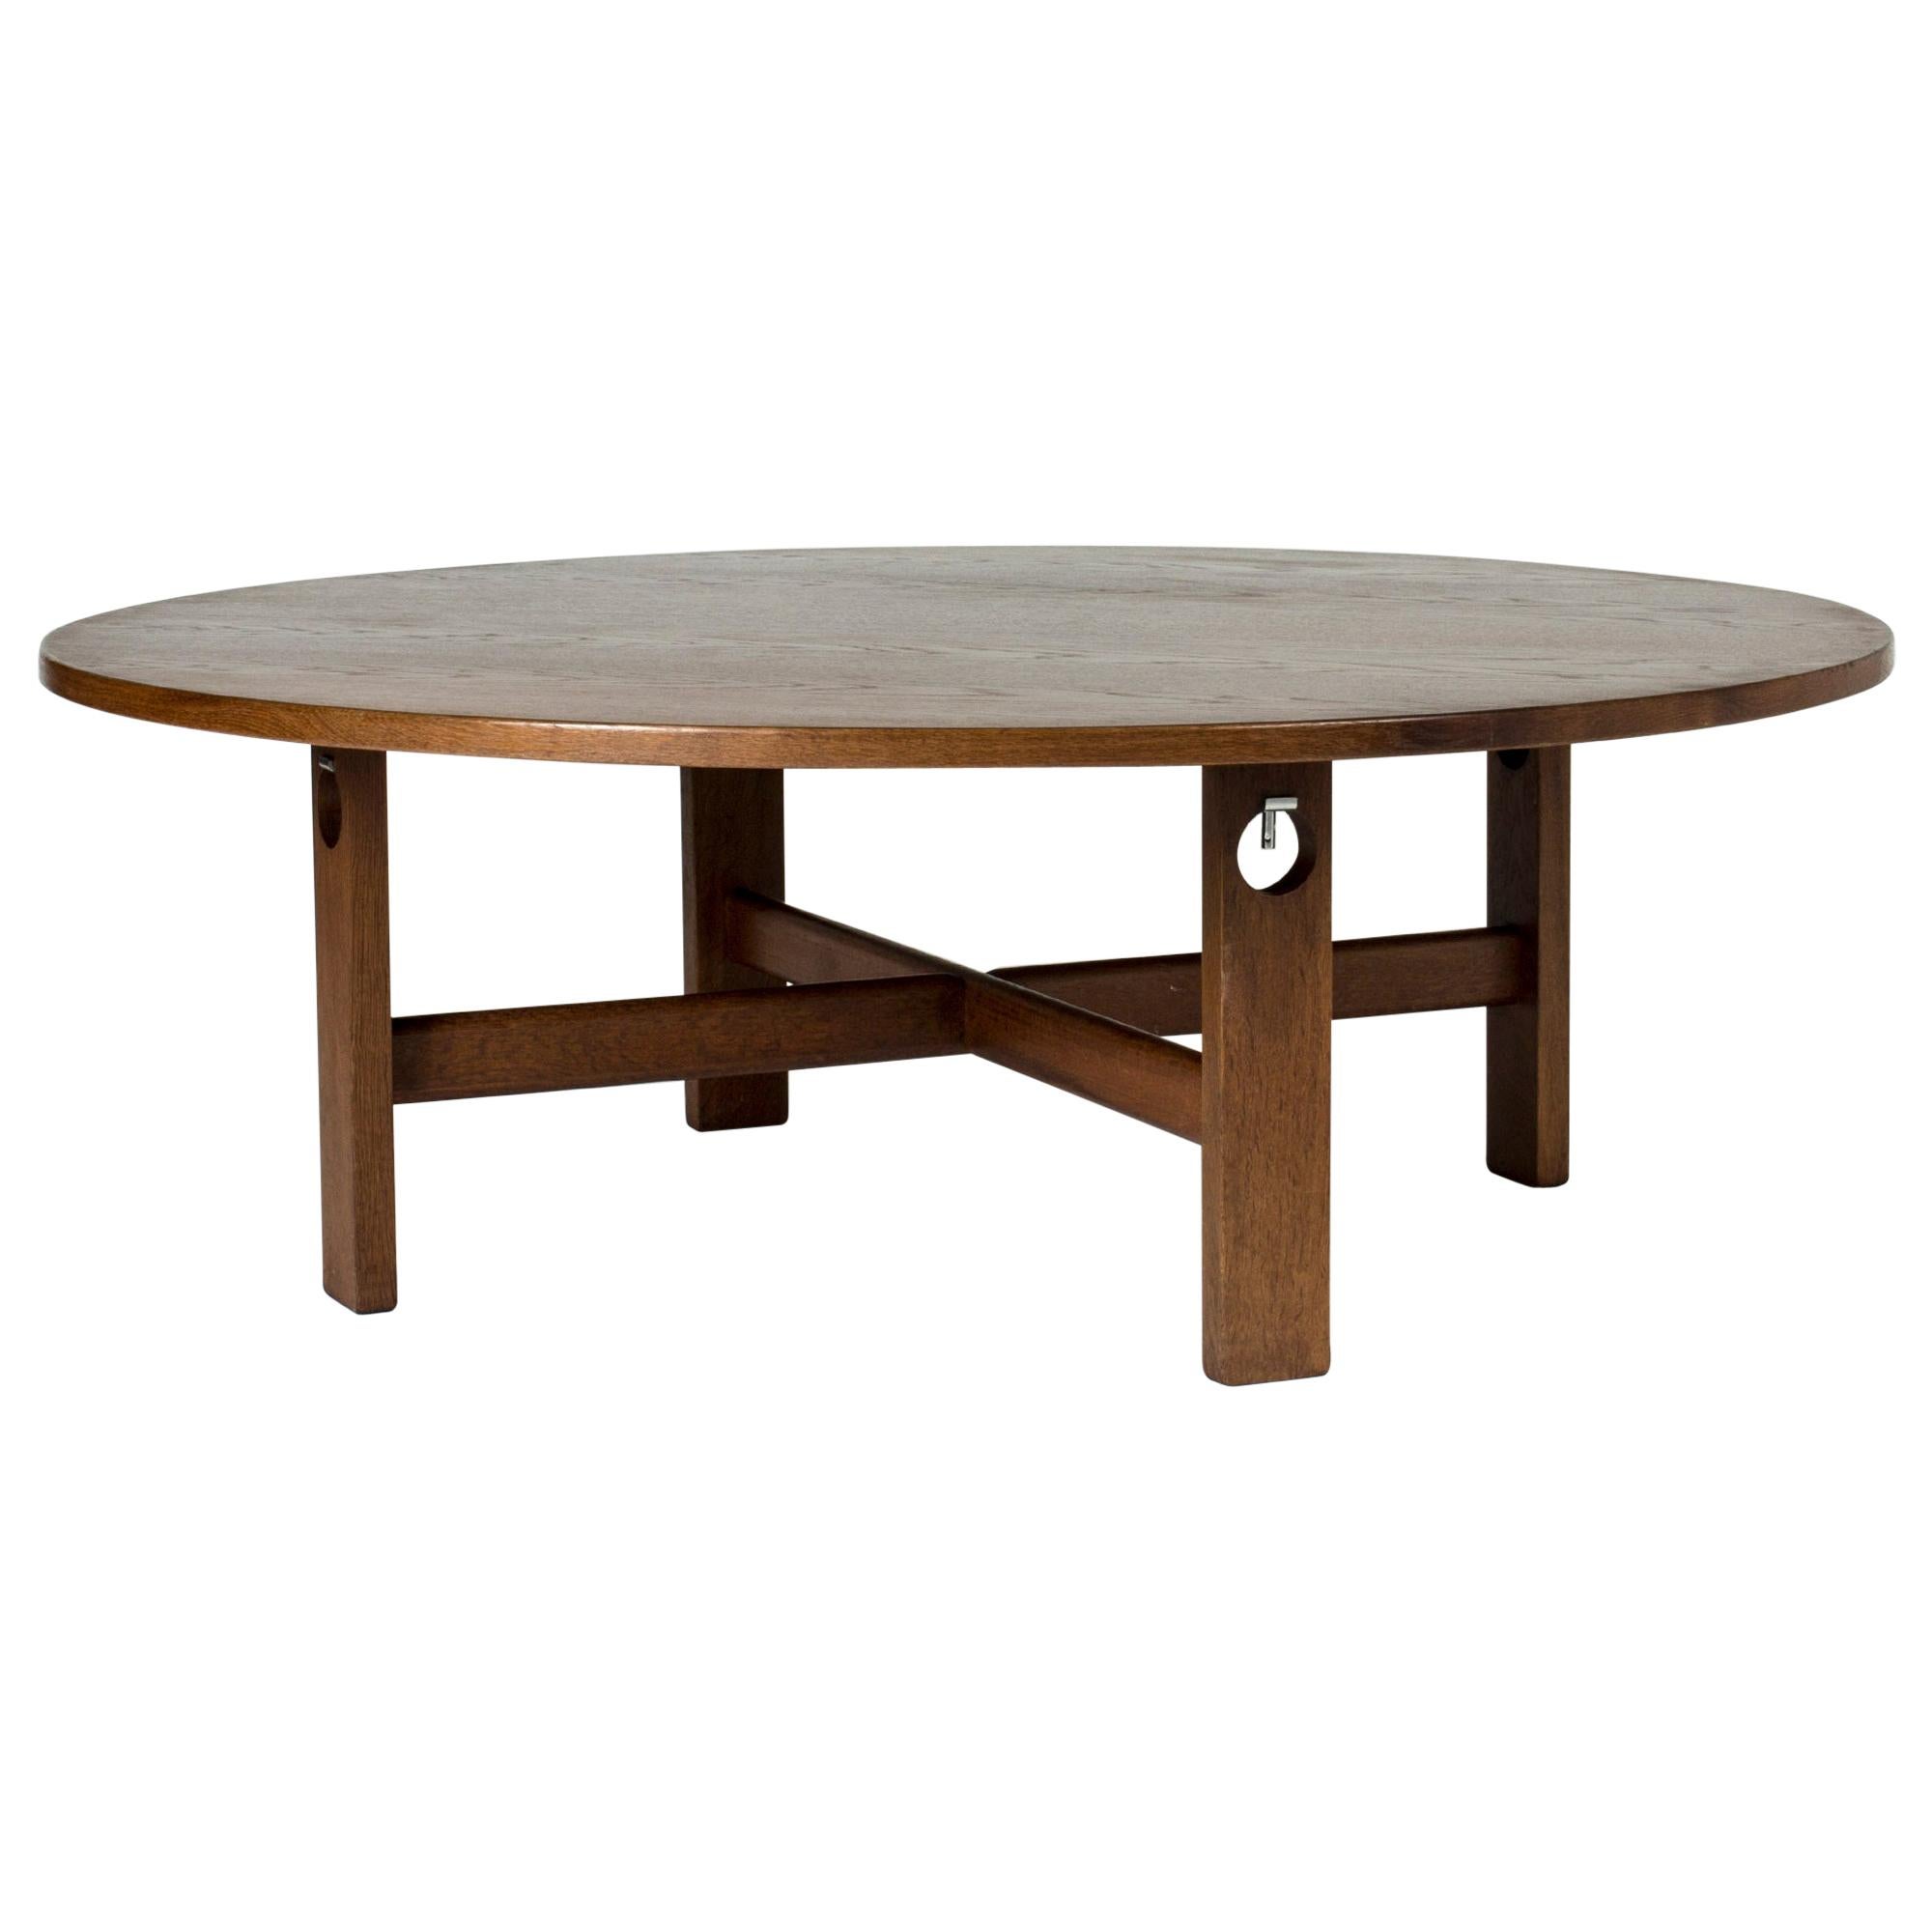 Stained Oak Coffee Table Designed by Hans J. Wegner for GETAMA, Denmark, 1960s